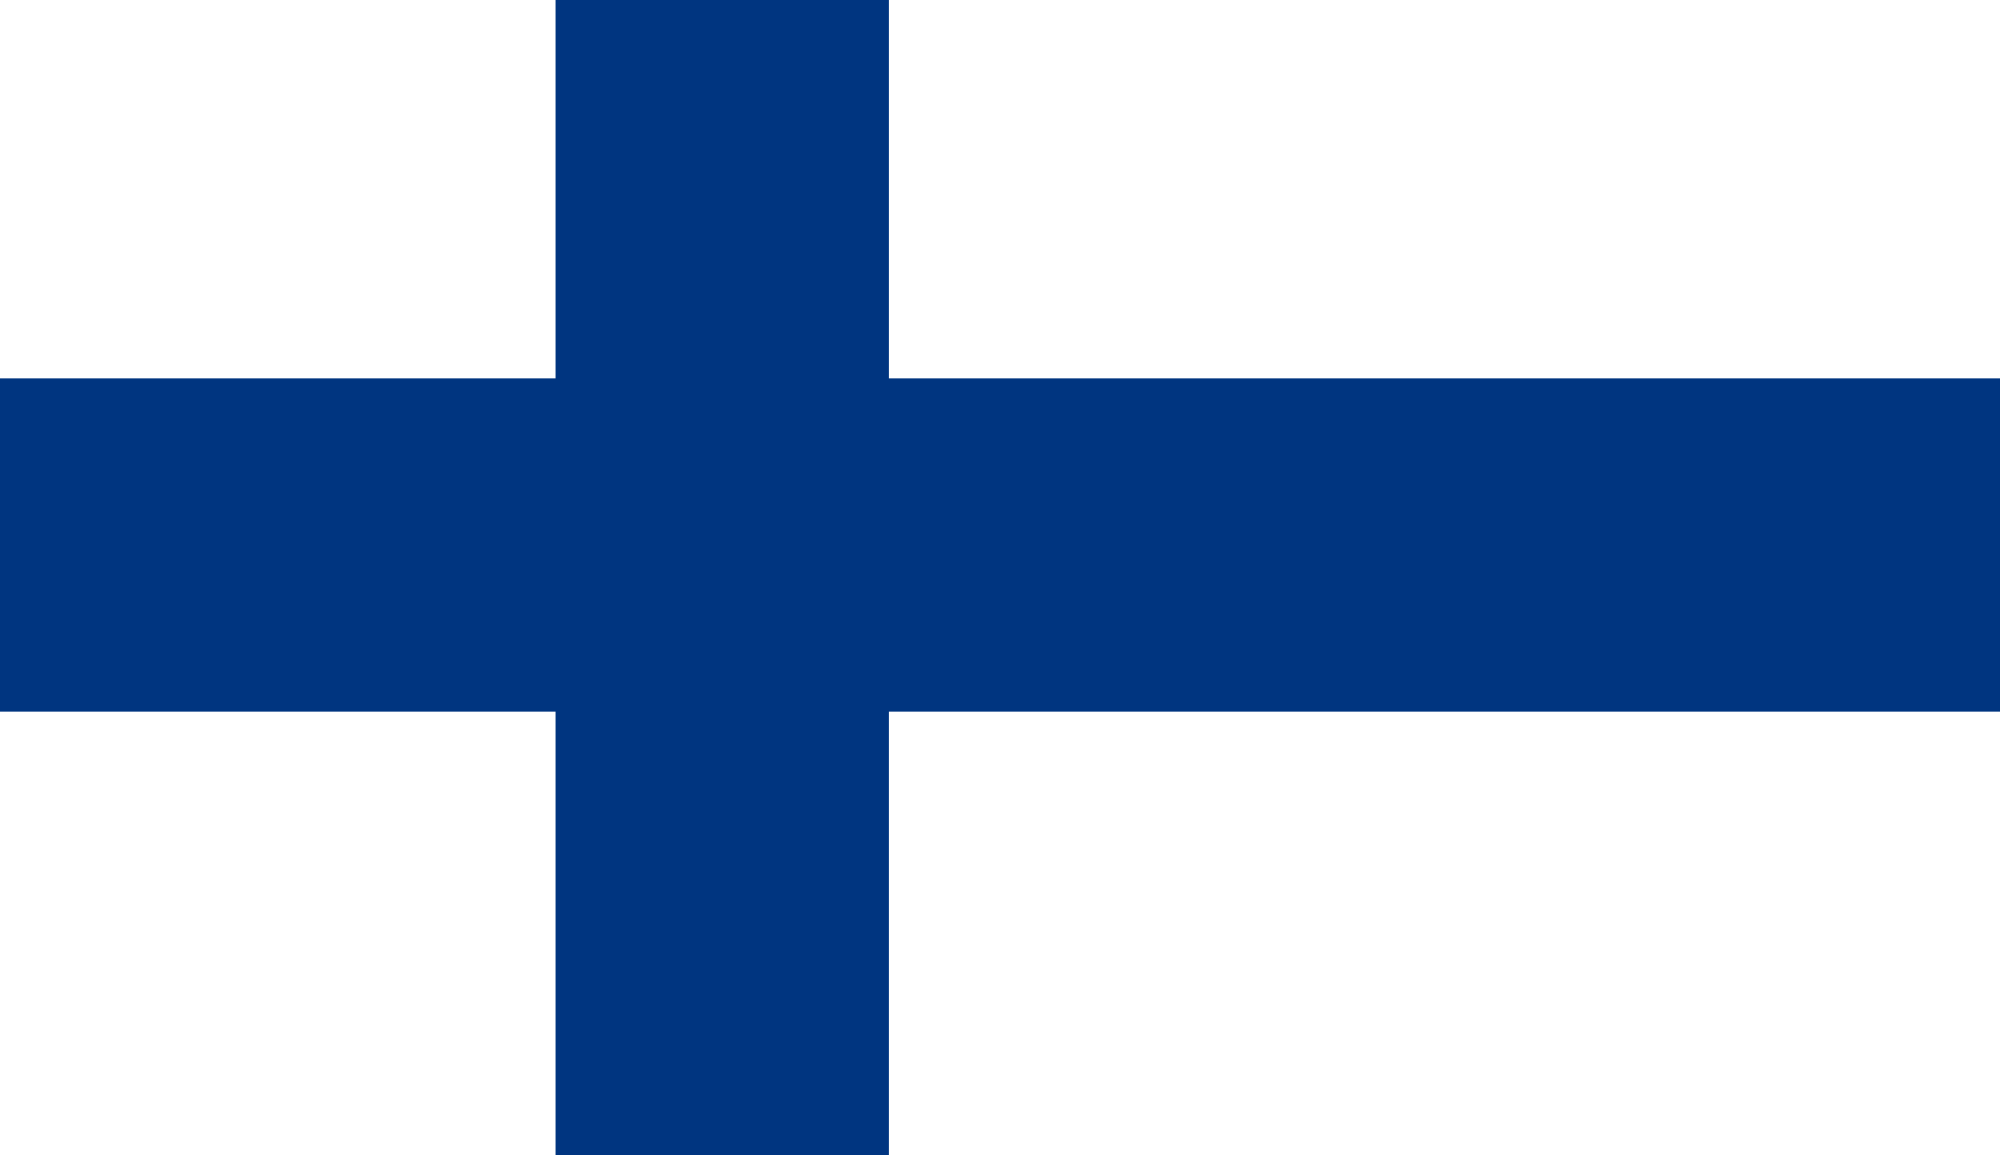 Finlândia é considerado o 'país mais feliz do mundo' segundo pesquisa